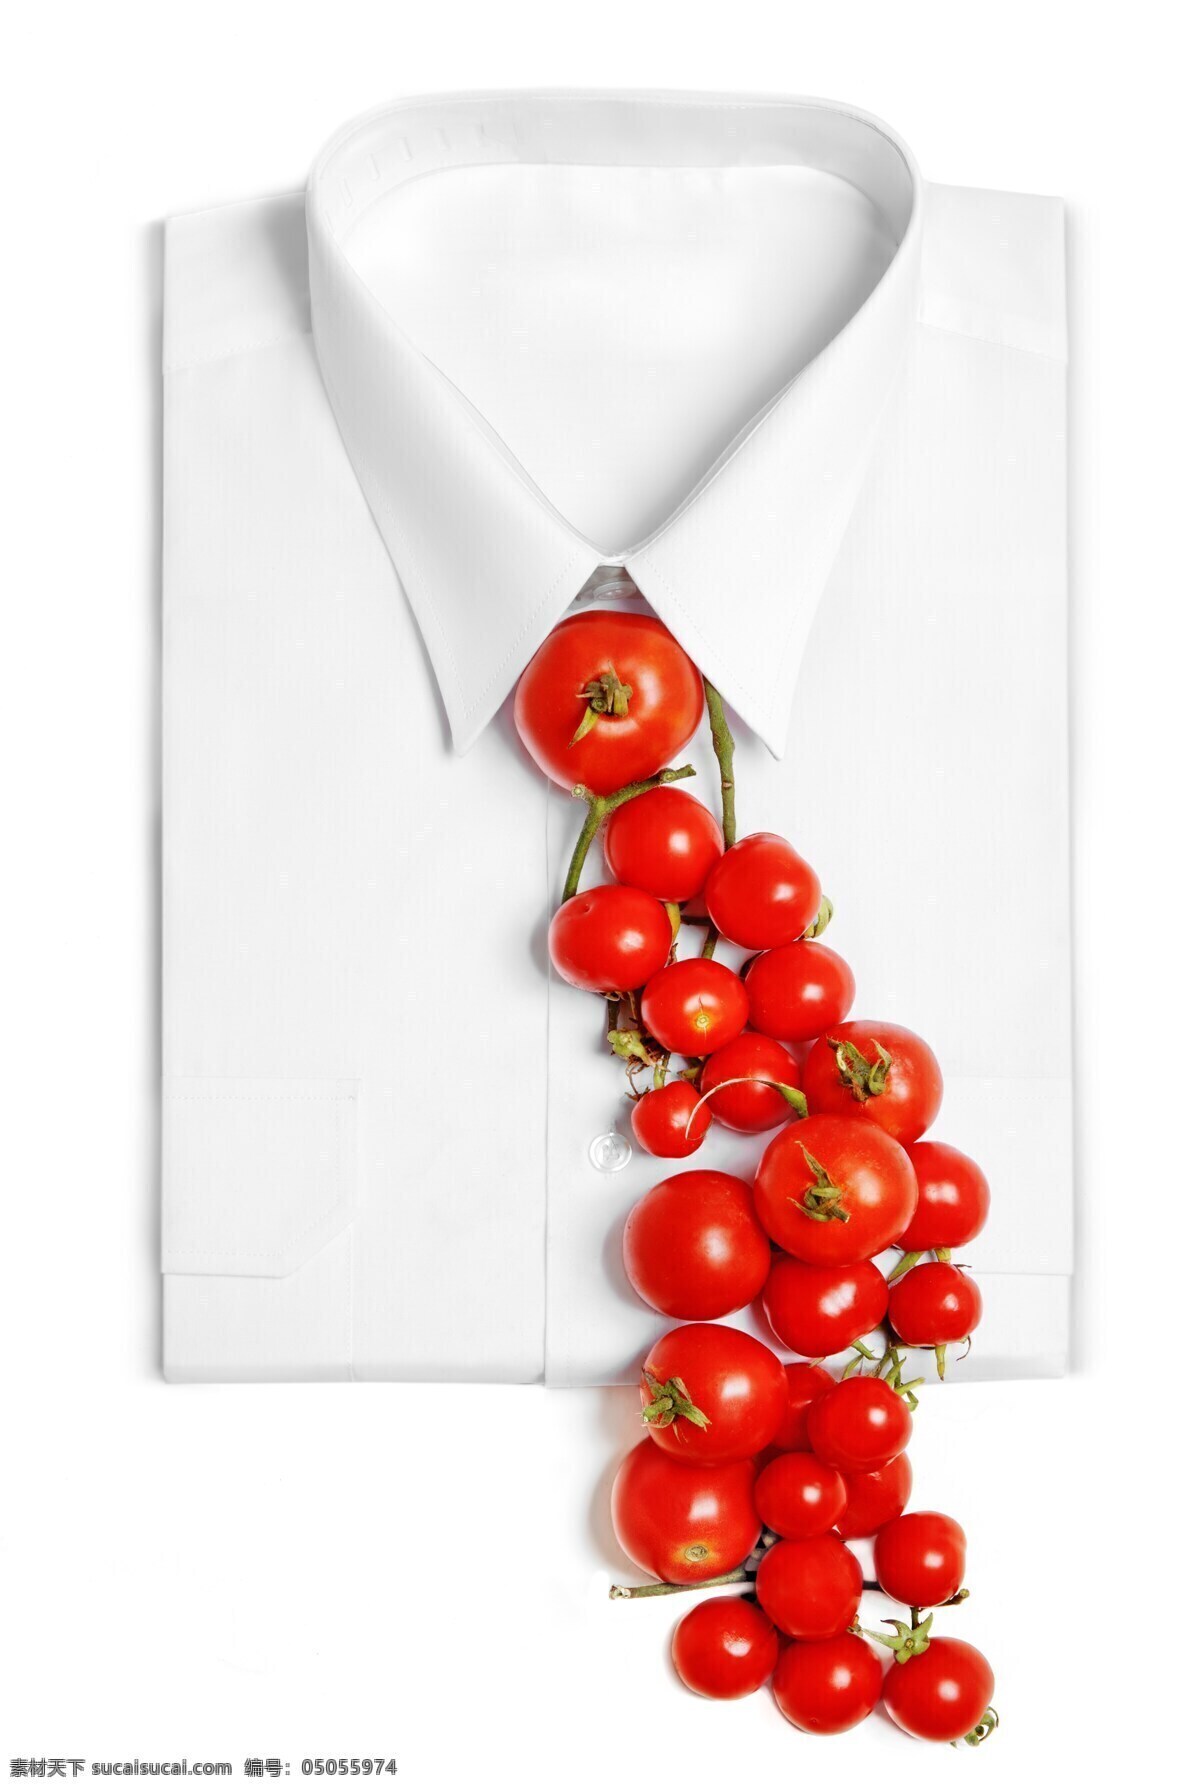 西服 西红柿 领带 衬衫 蔬菜 蔬菜图片 餐饮美食